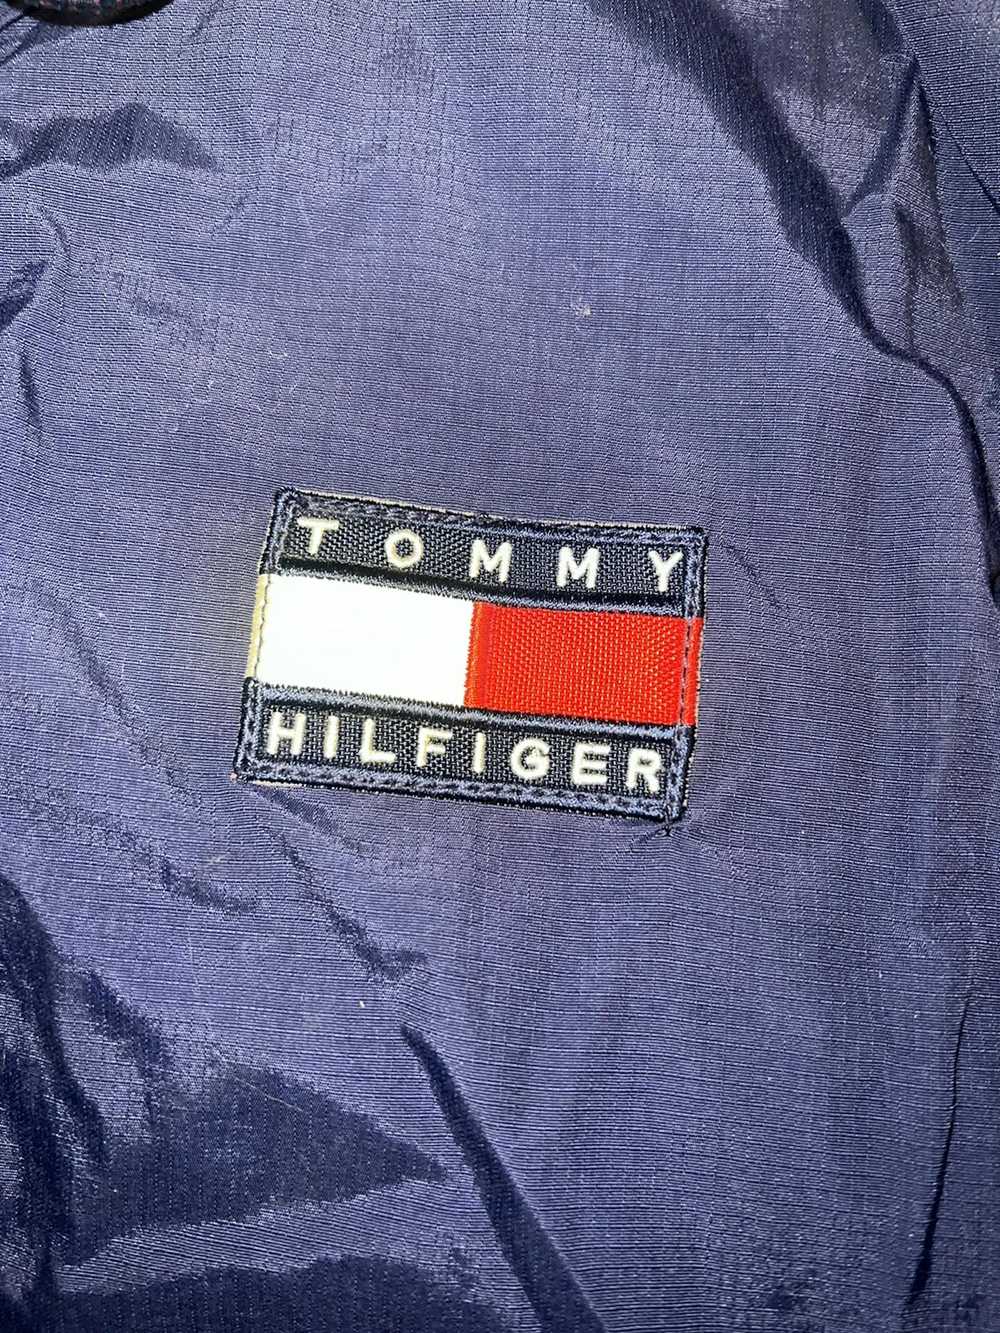 Tommy Hilfiger Vintage Tommy Hilfiger jacket - image 3